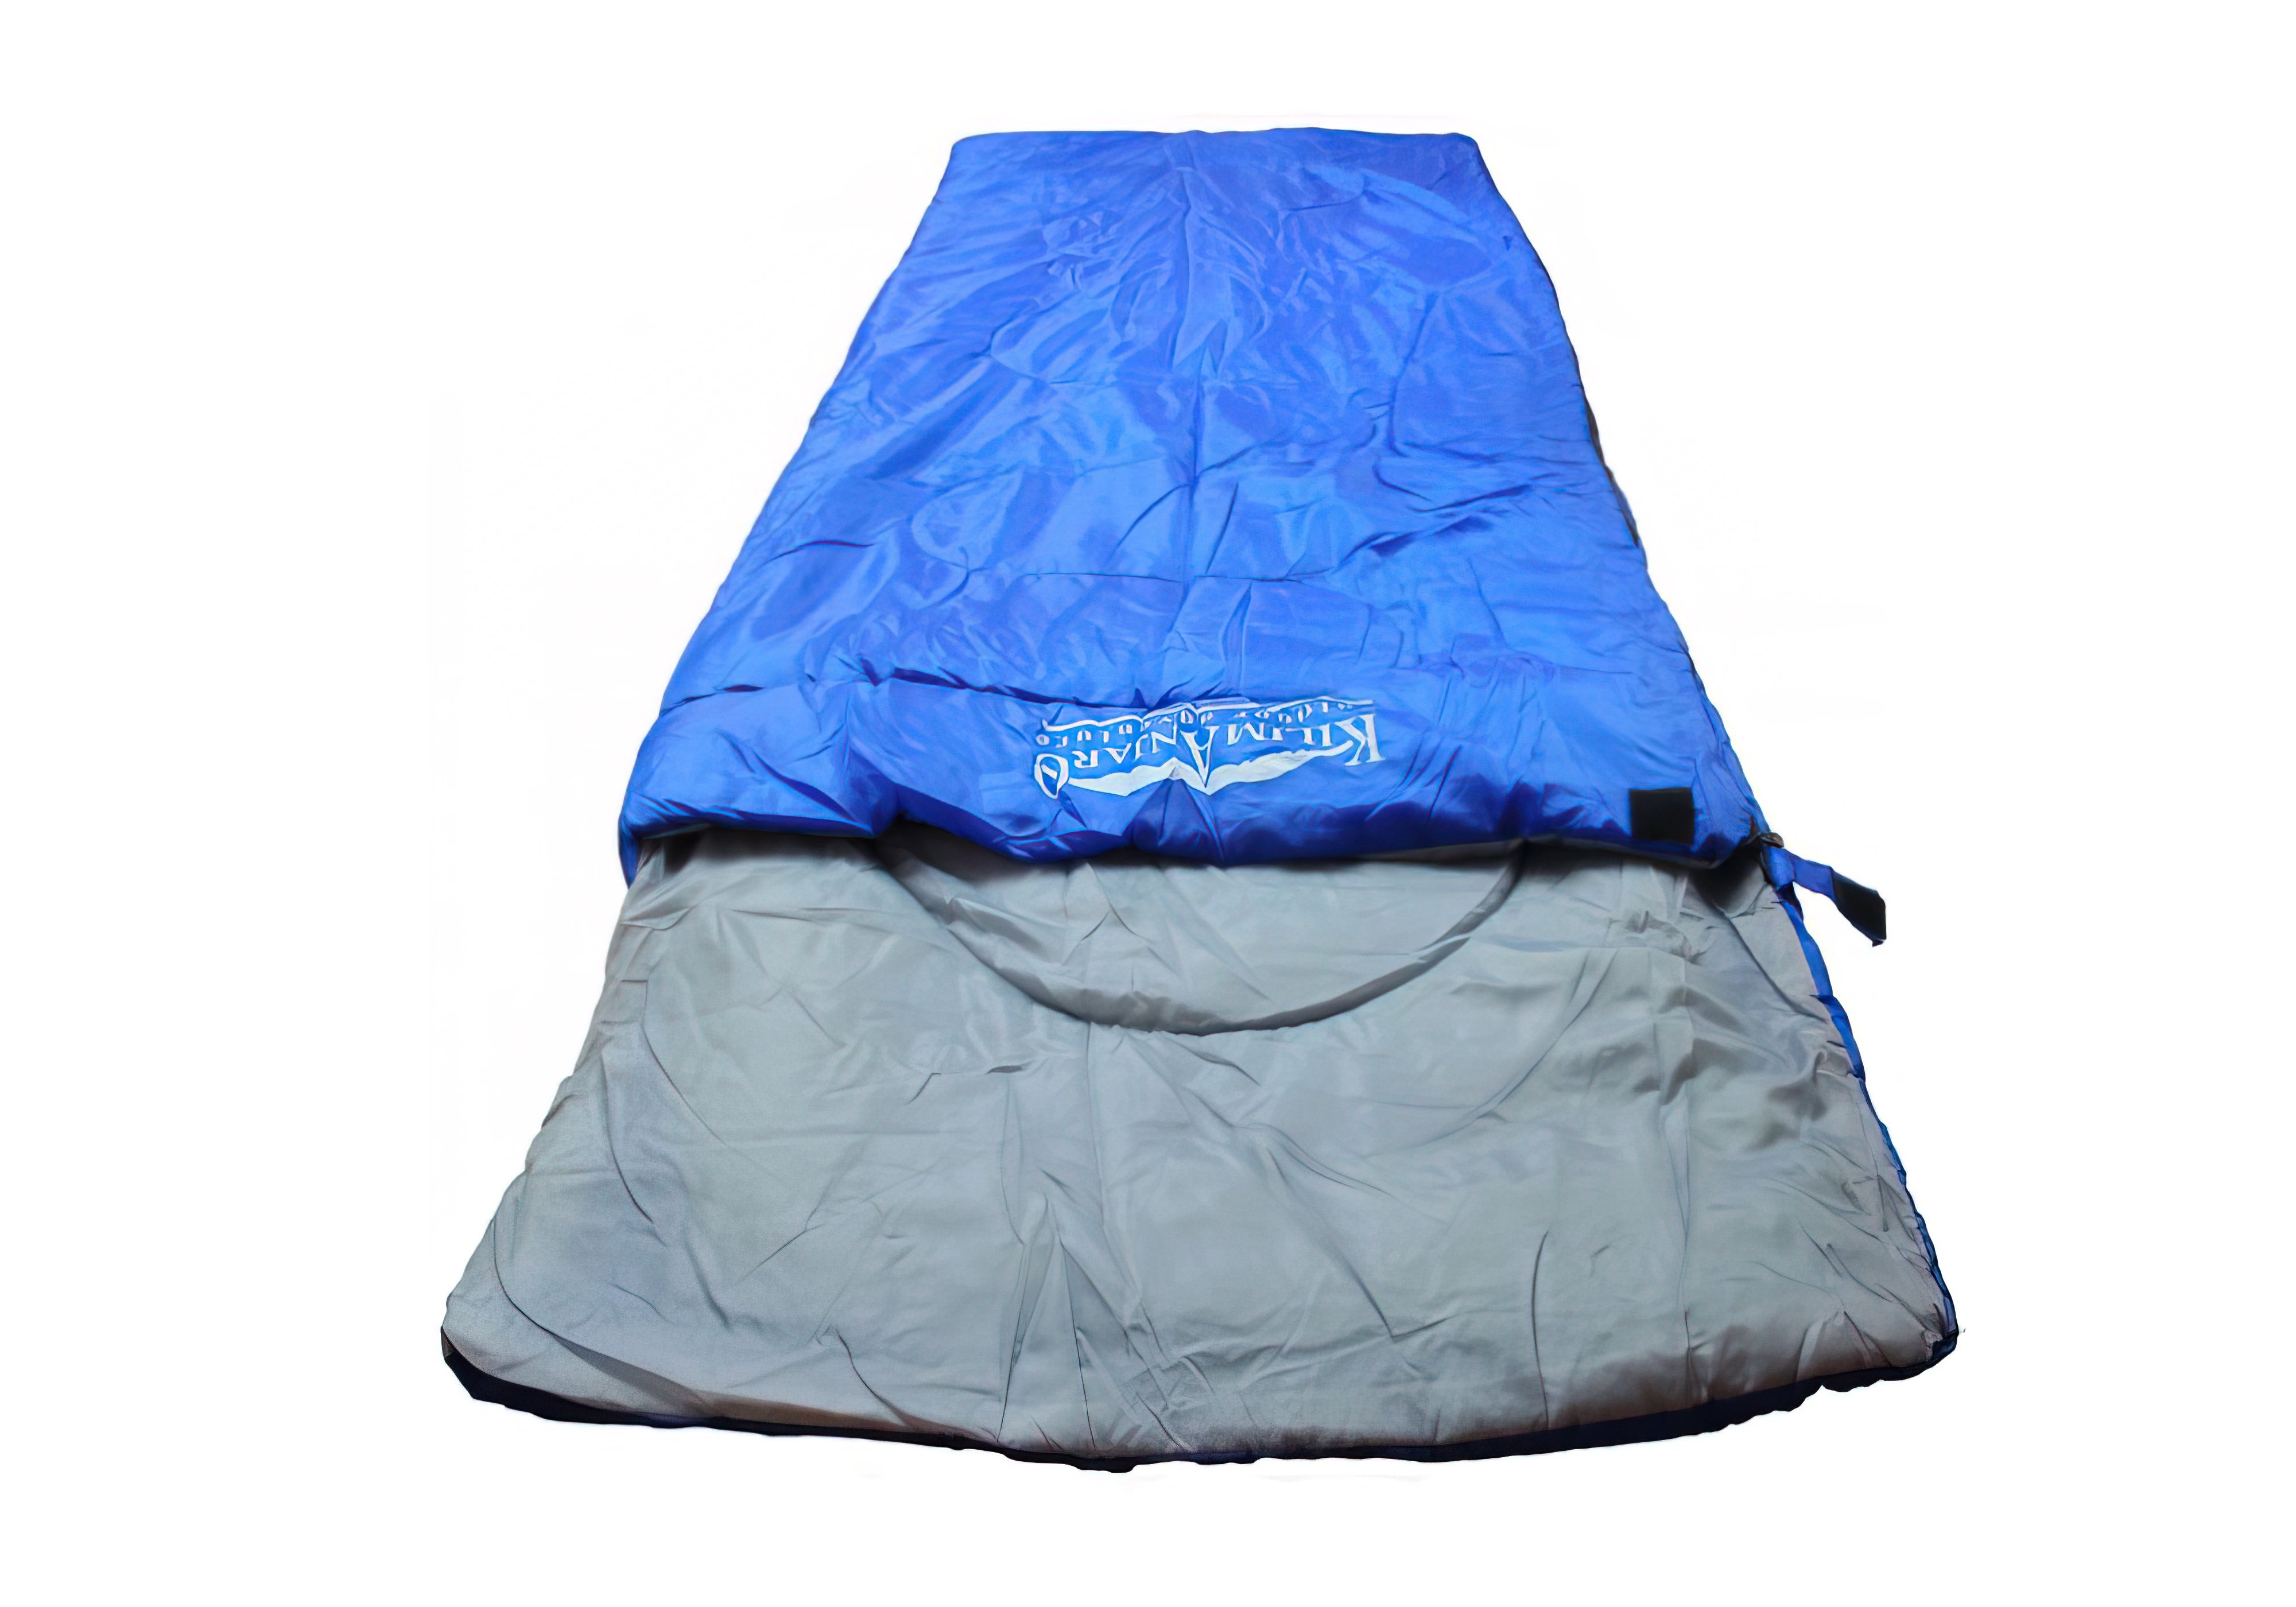  Купить Спальные мешки Спальный мешок "SS-06T-020-new" Kilimanjaro